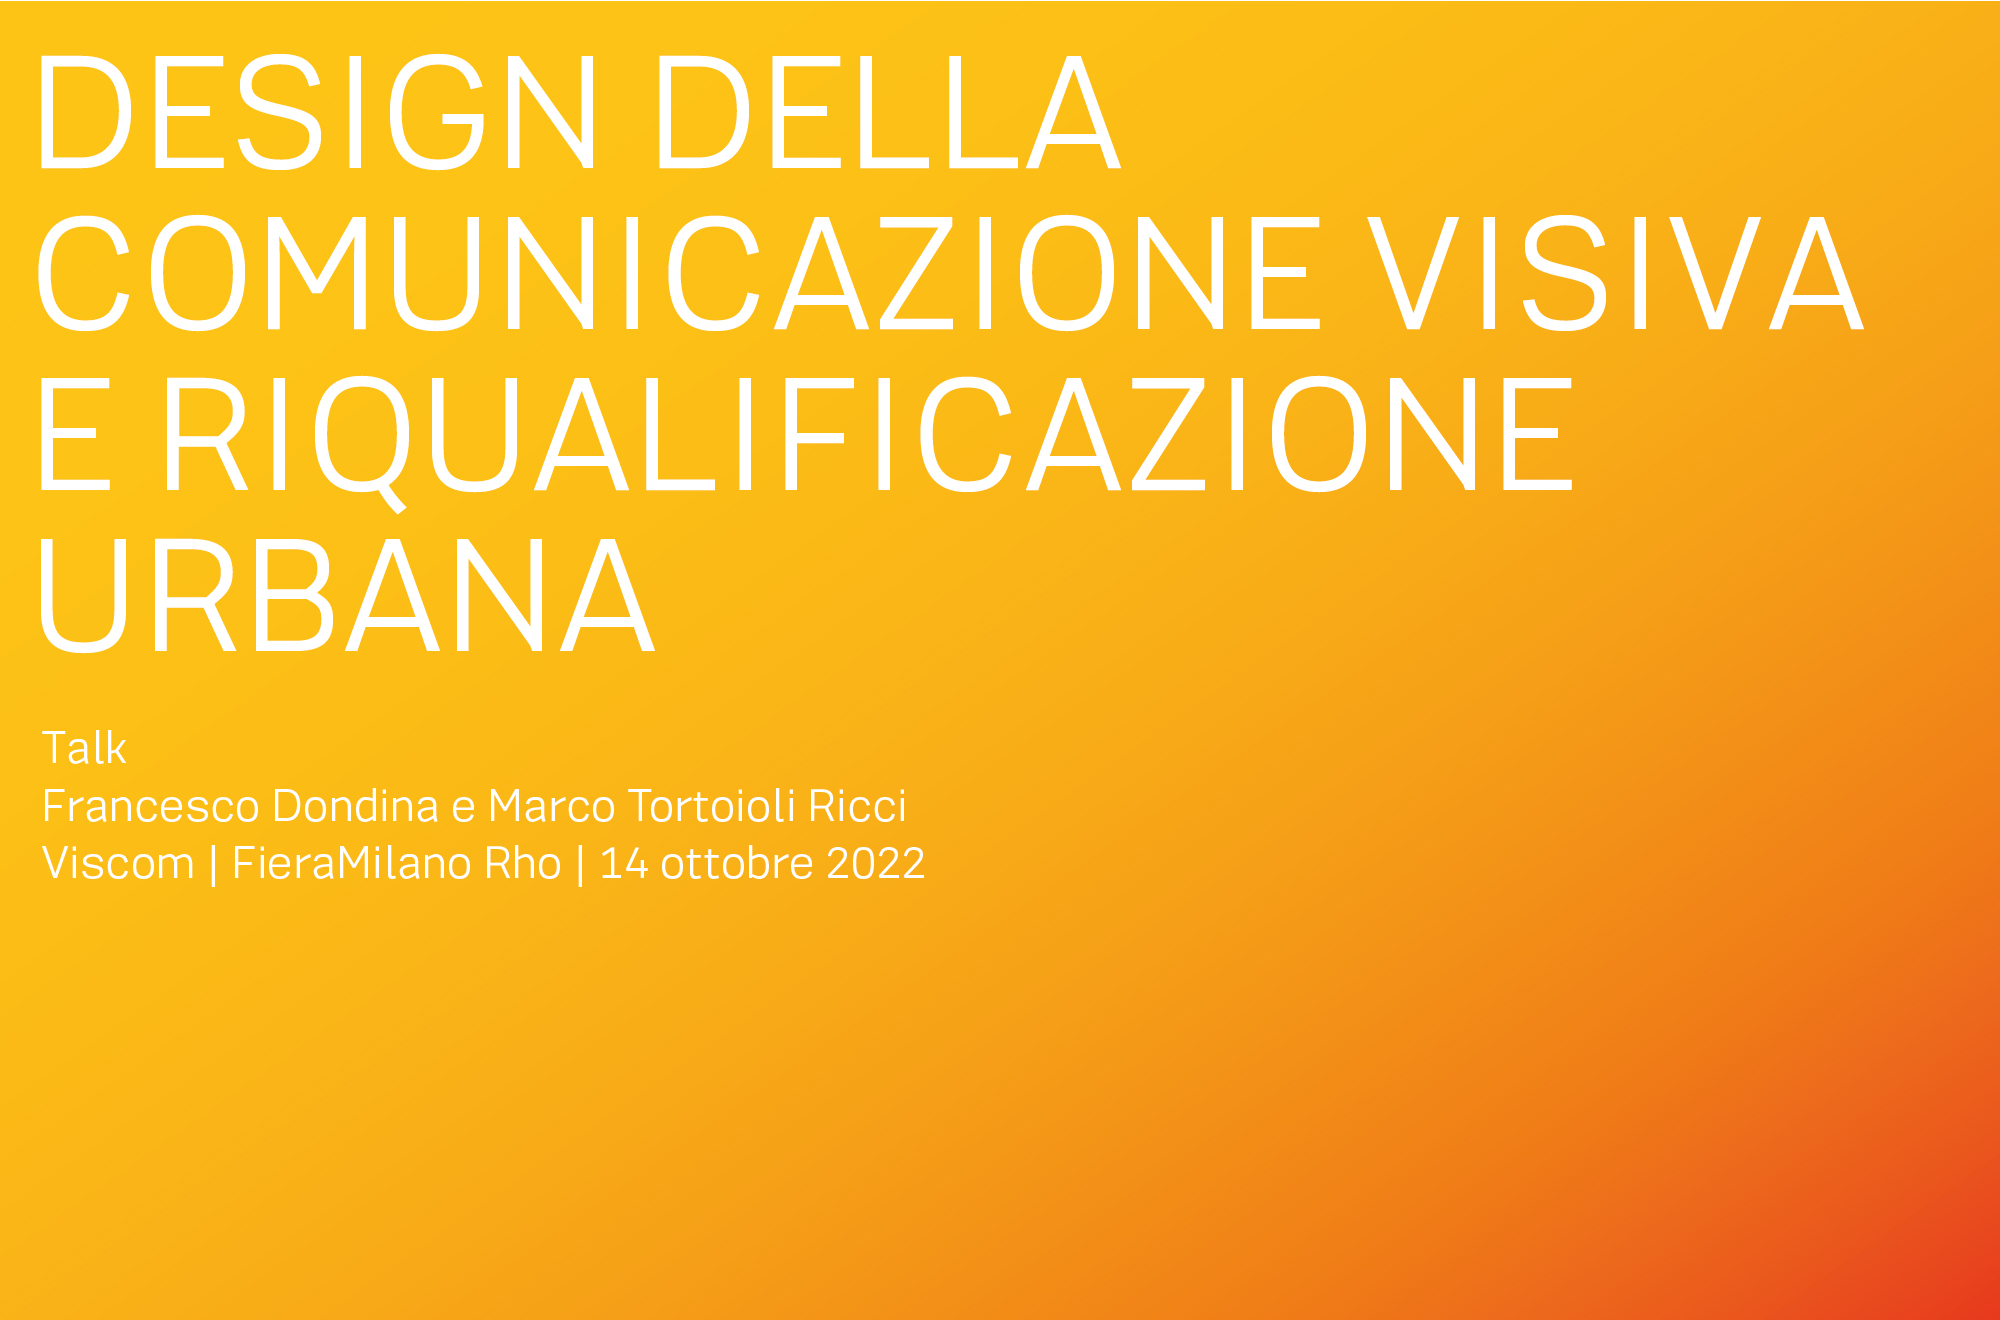 Design della comunicazione visiva e riqualificazione urbana Talk di Francesco Dondina e Marco Tortoioli Ricci